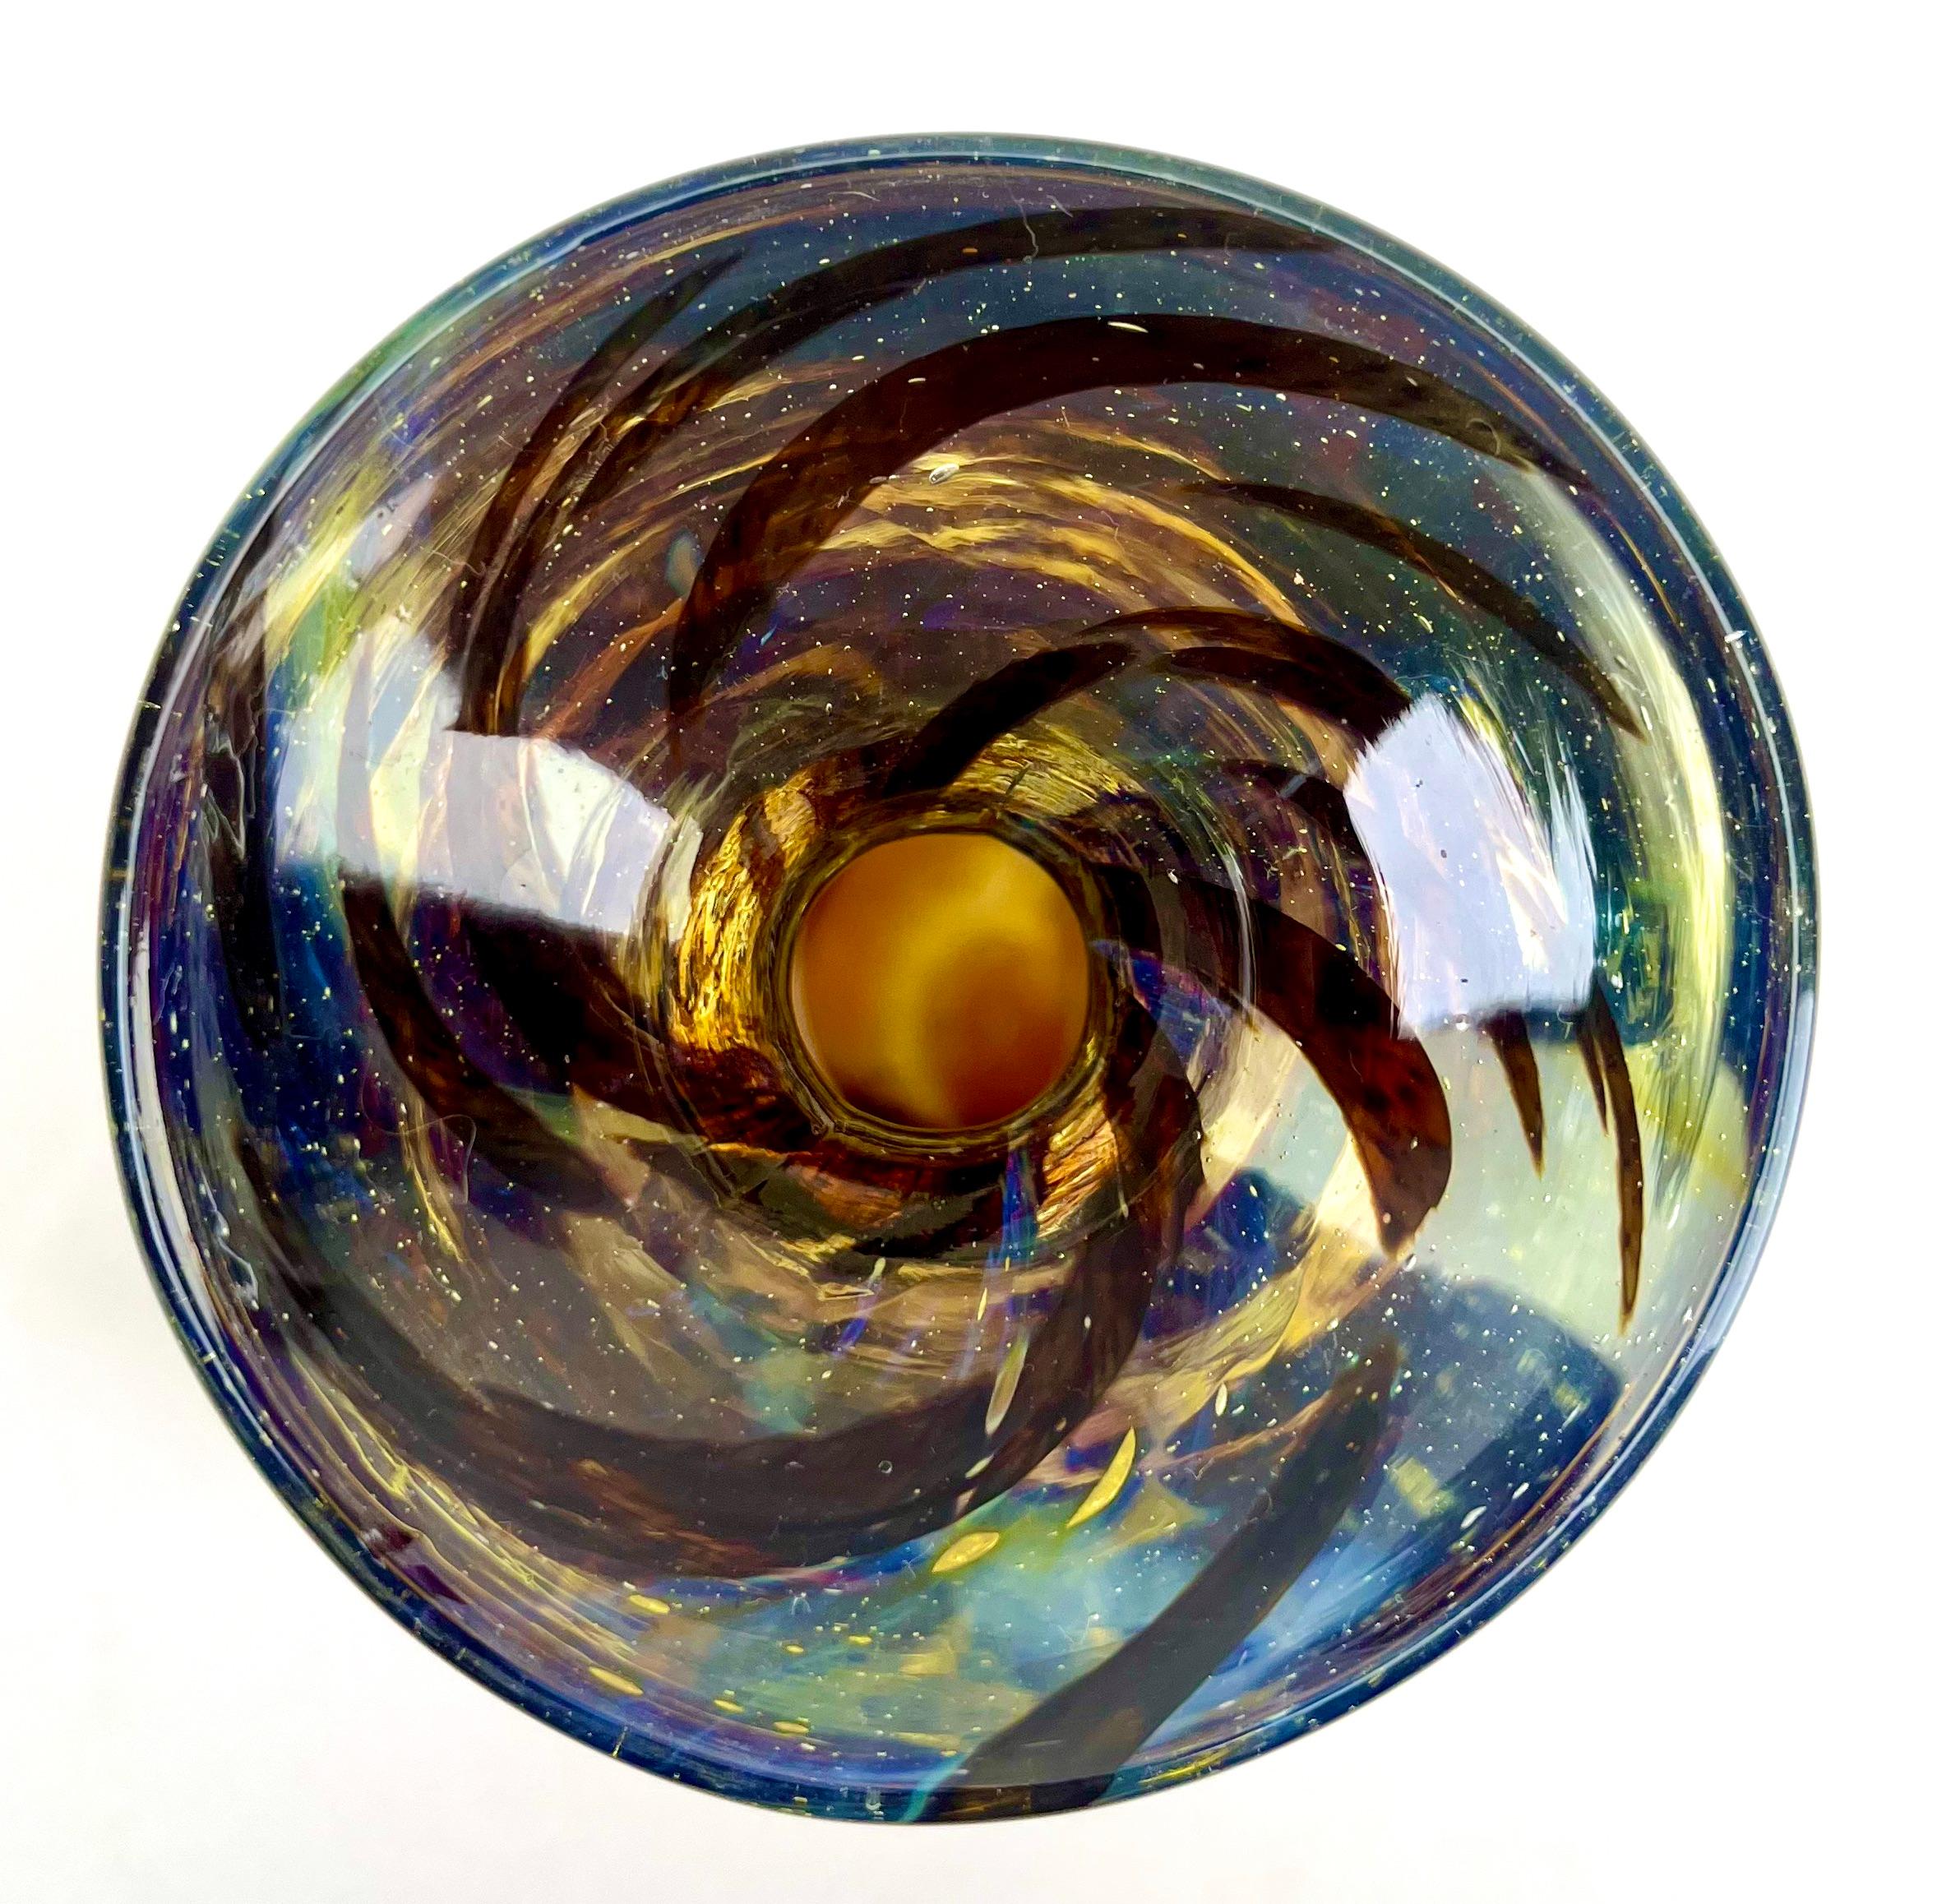 Vase aus Kunstglas im Stil von WMF in Deutschland, Karl Wiedmann, 1950er Jahre
Deutsche Glasschale im Stil von Karl Wiedmann, 1950er Jahre 

Eine dekorative Glasvase im Stil der WMF (Württembergische Metallwarenfabrik) in Deutschland.

Das Stück ist